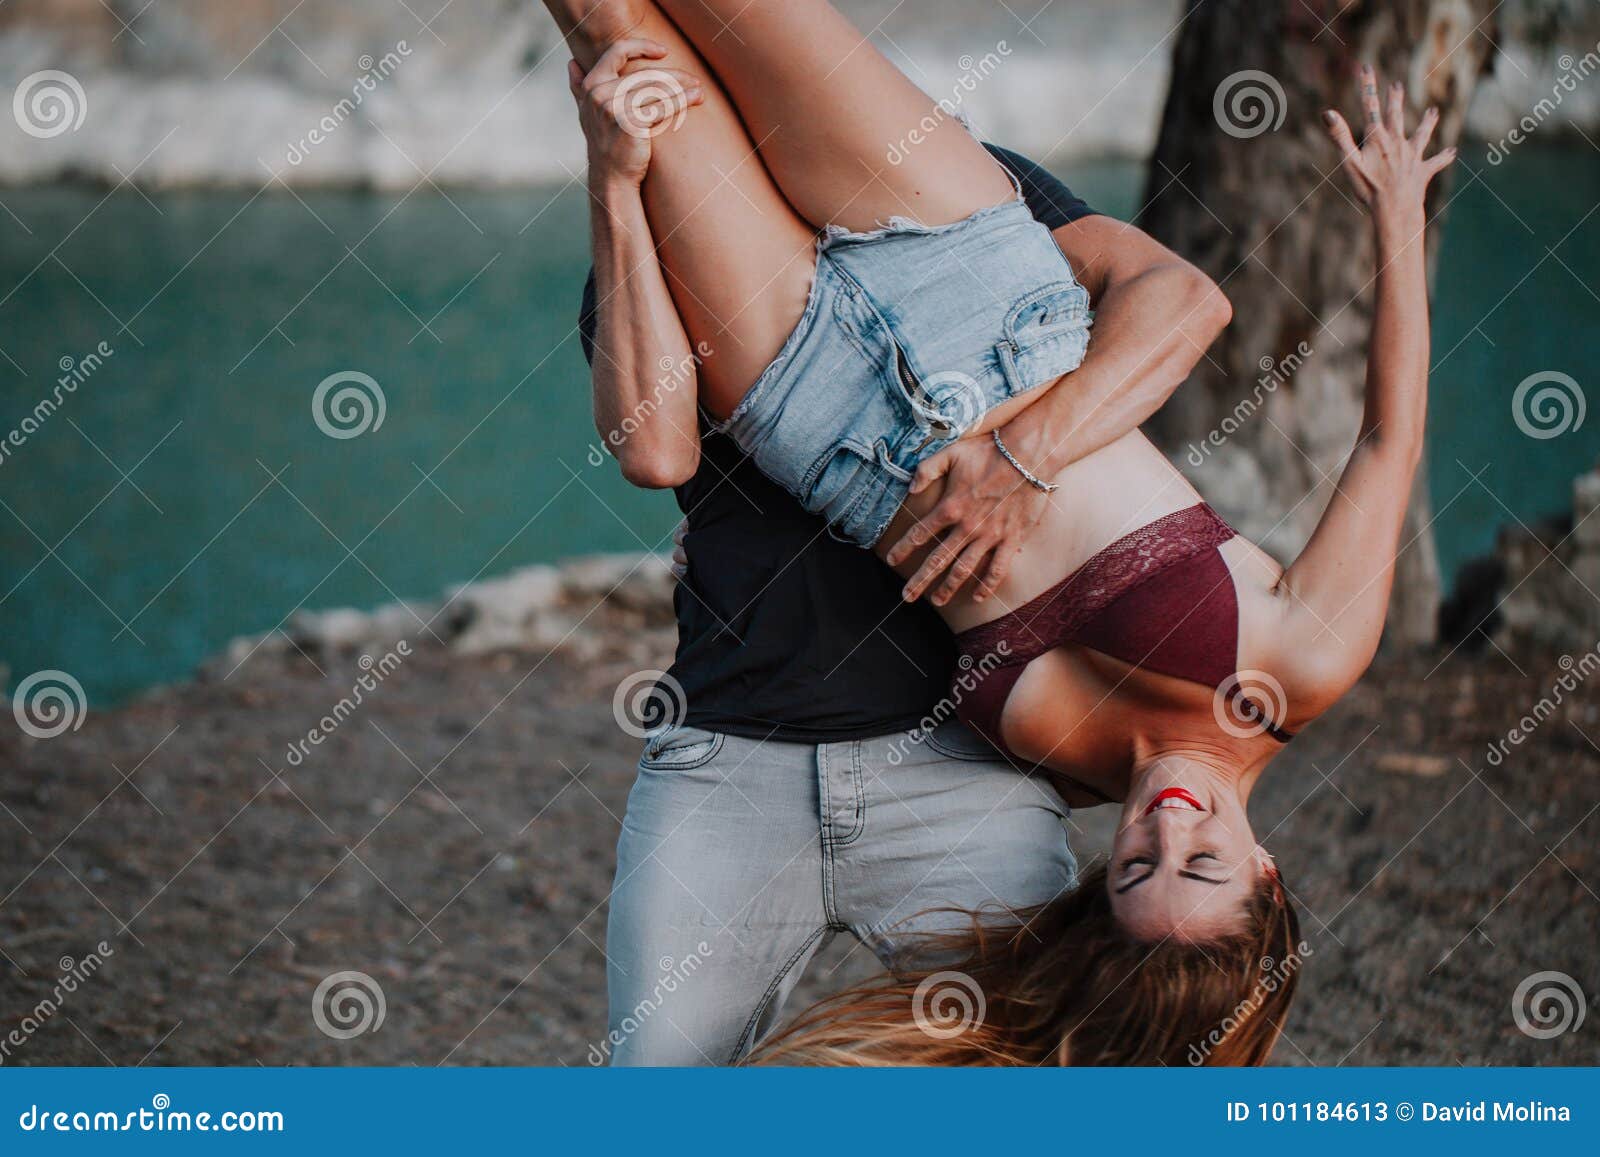 Мужчина держит девушку за ногу